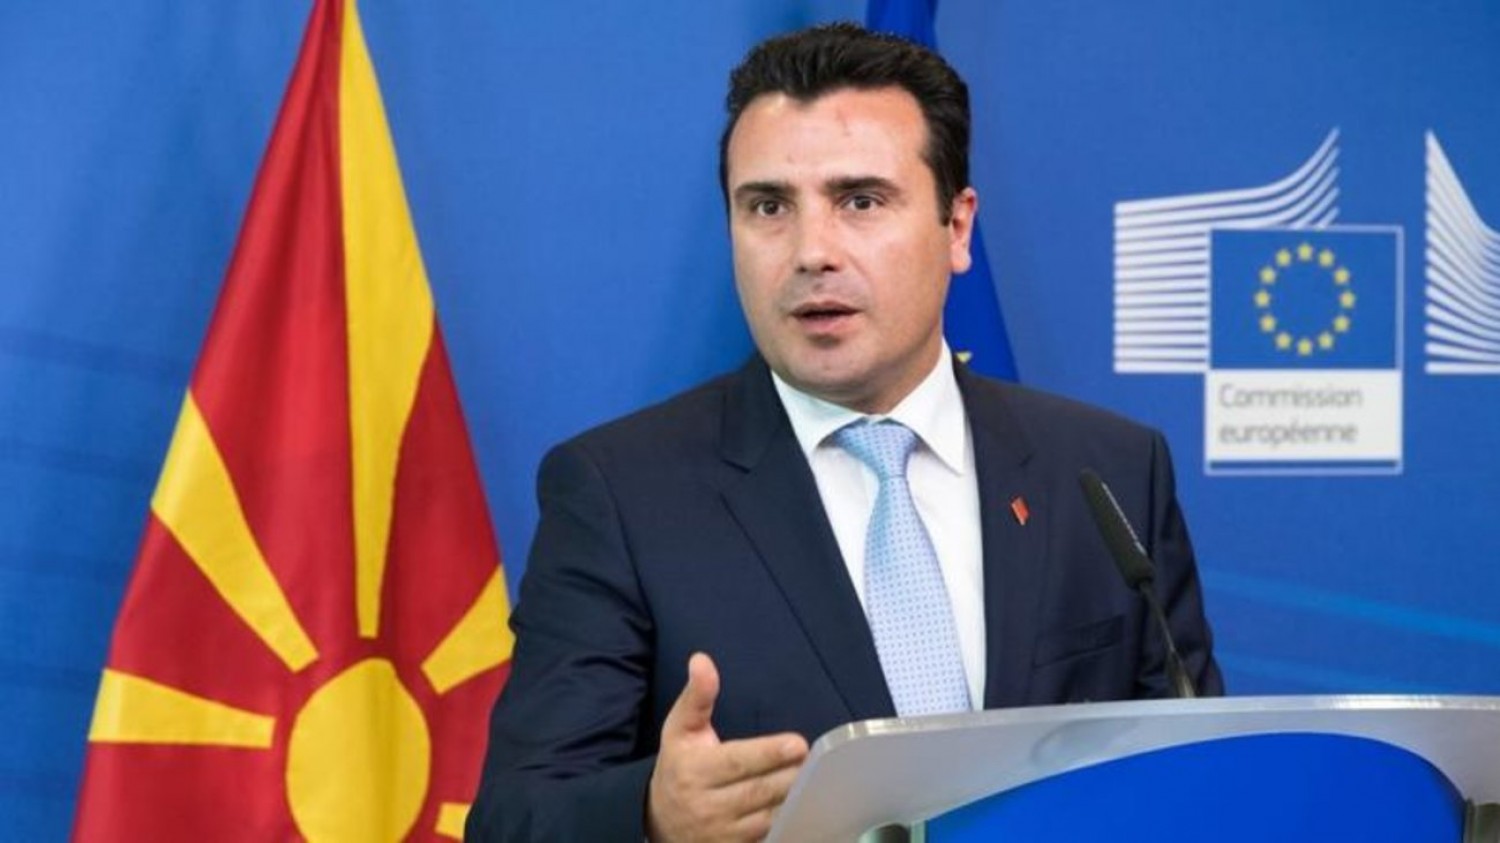 Ο Ζάεφ πανηγυρίζει και μιλά για «Δημοκρατία της Μακεδονίας»: «Ανοίξαμε τις πόρτες ΝΑΤΟ και ΕΕ»